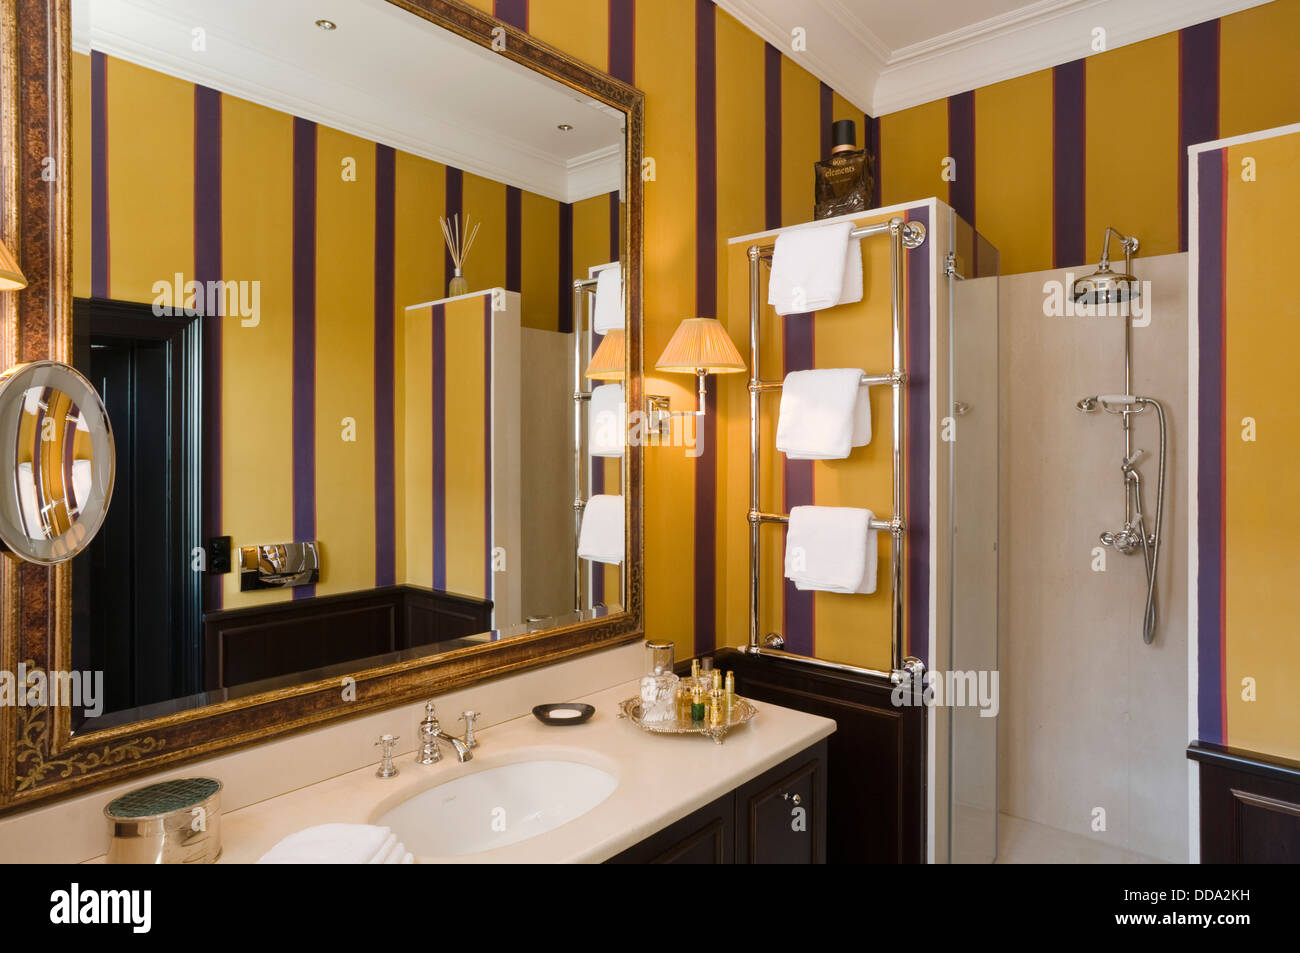 Gentleman's en suite bathroom with shower and wallpapered walls Stock Photo